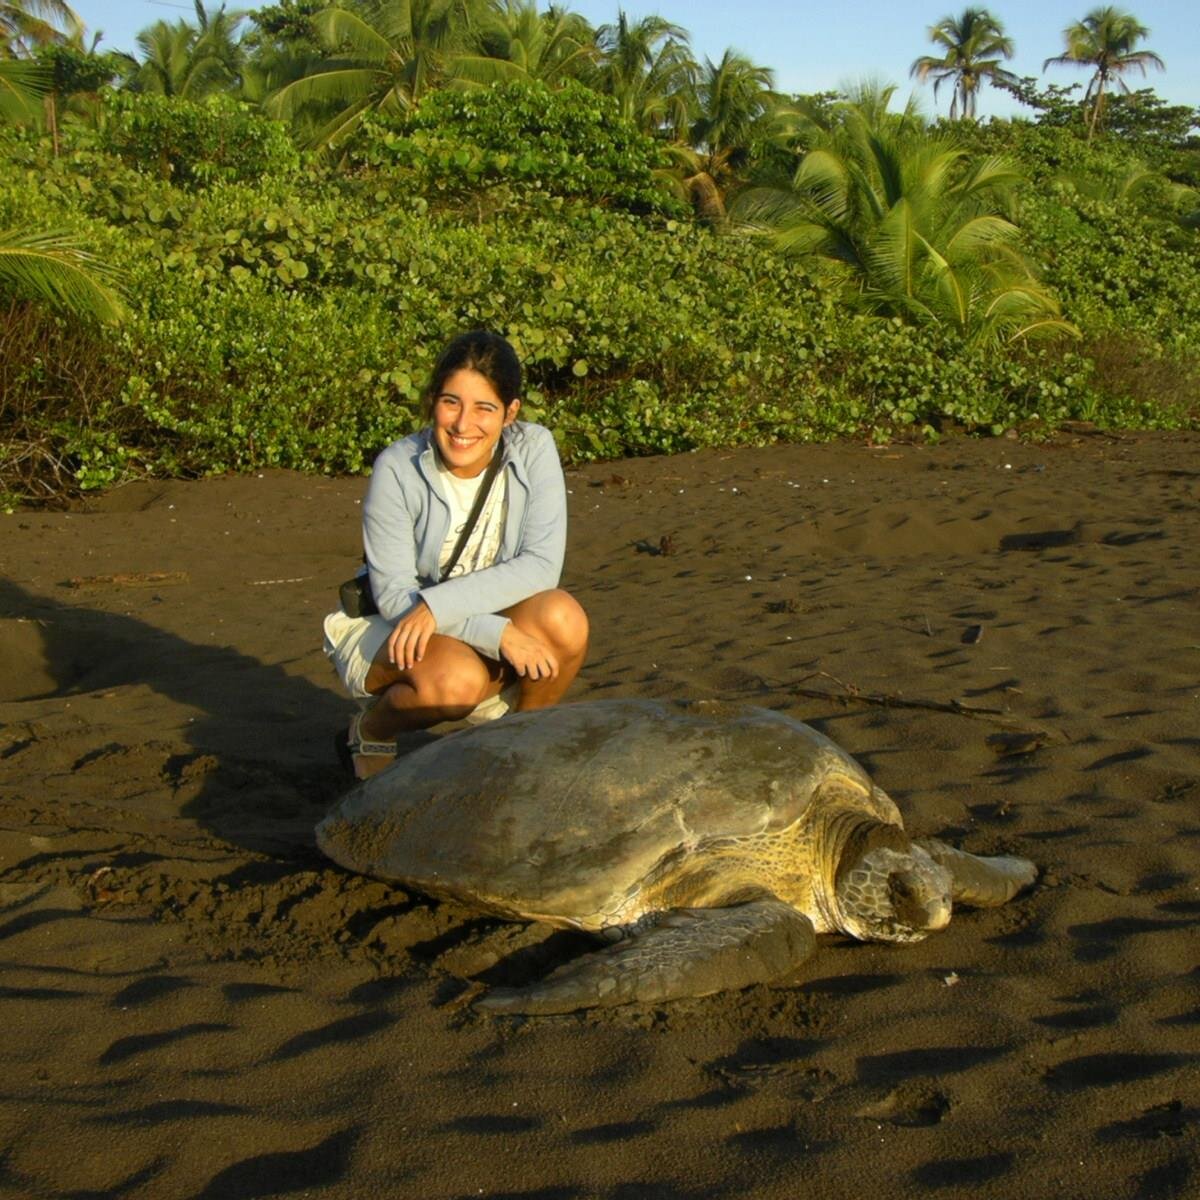 Hago cosas de educación ambiental. Aprendí mucho de las tortugas marinas y me gusta la gente que provoca cambios imprescindibles.